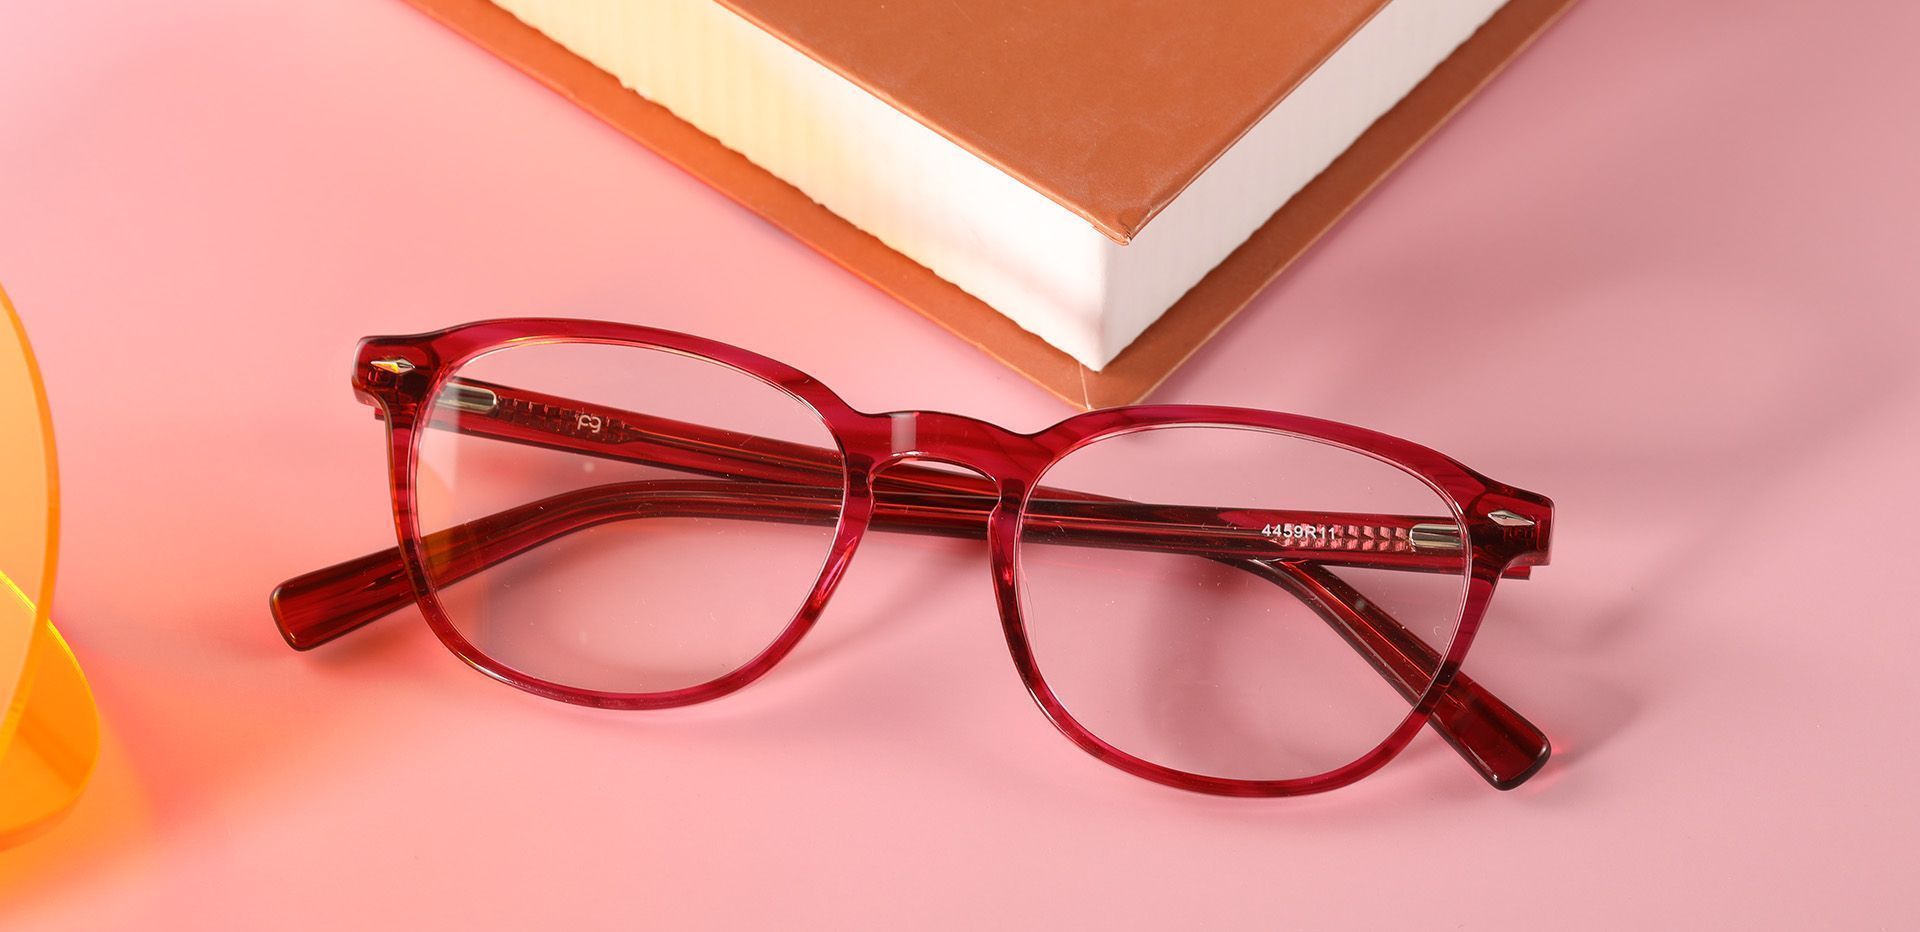 Marilla Oval Prescription Glasses - Red